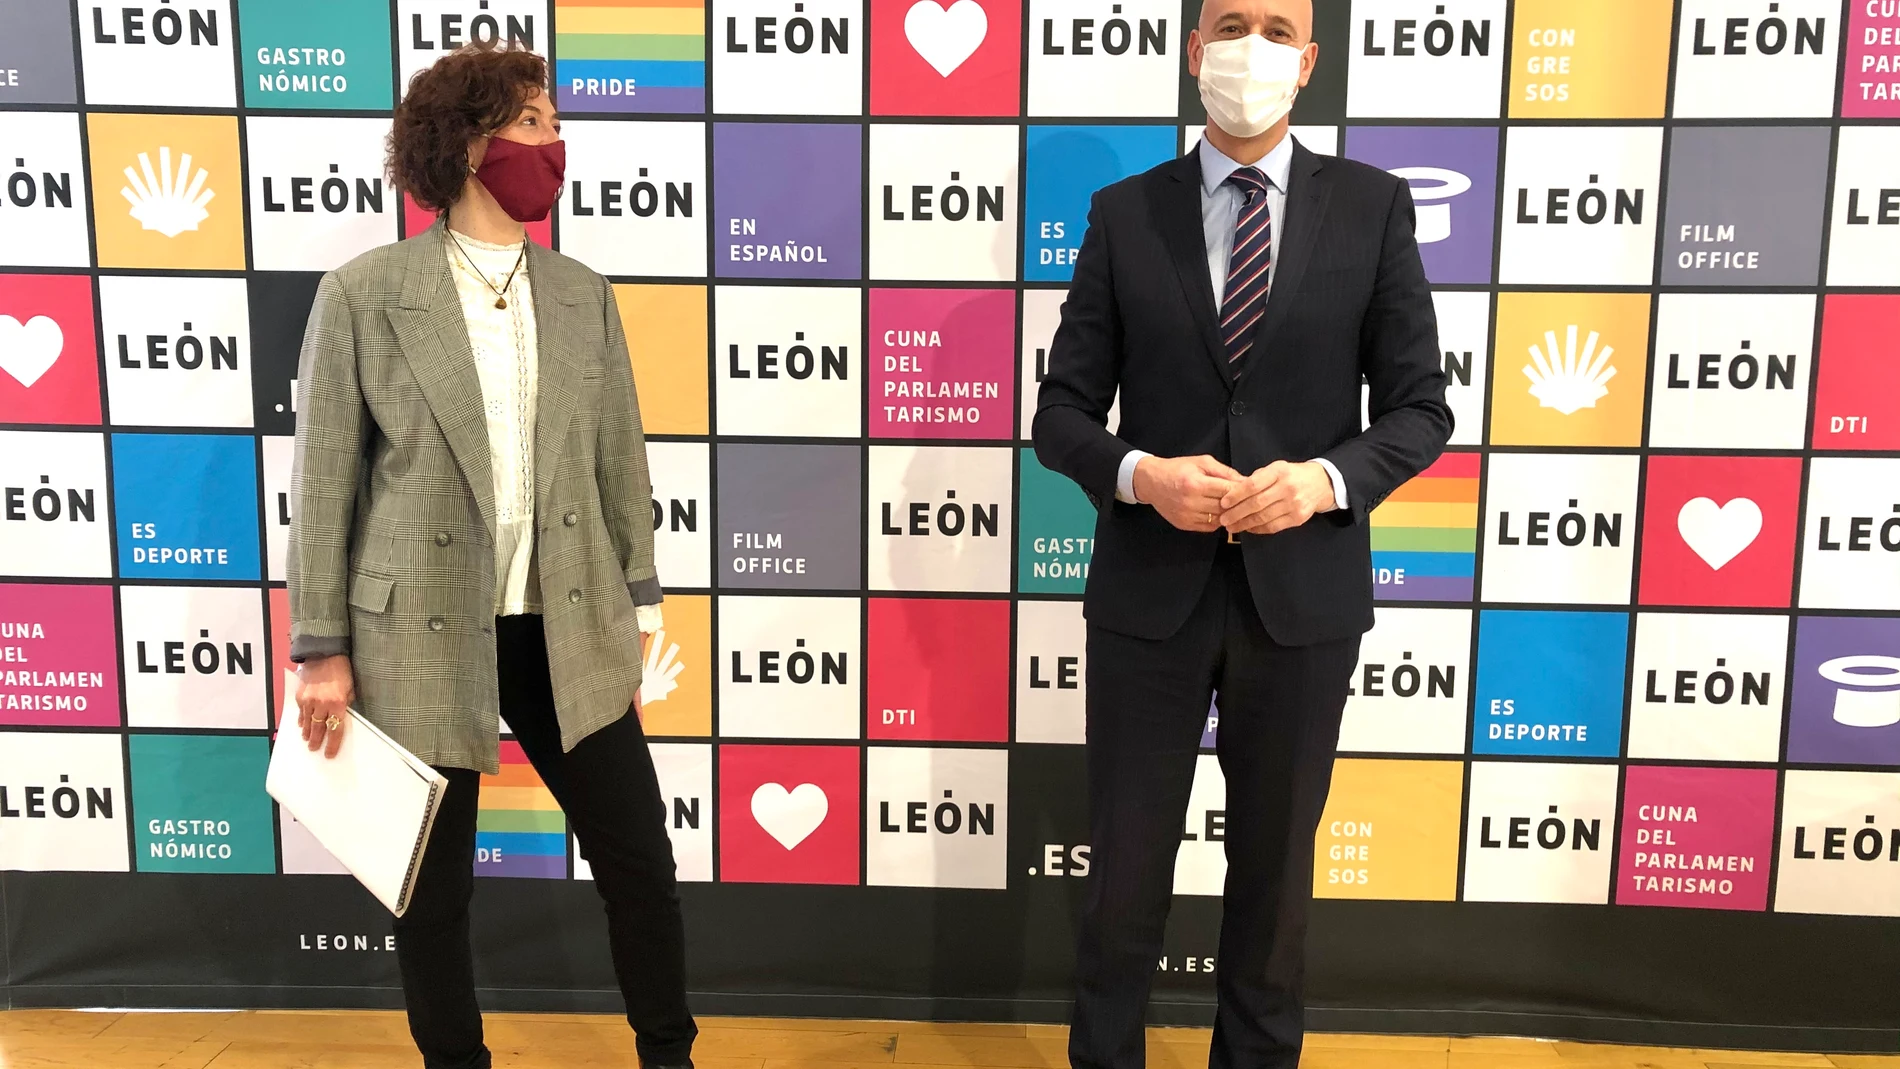 El alcalde de León, José Antonio Diez y la concejala Susana Travesí, informan sobre la marca de la ciudad